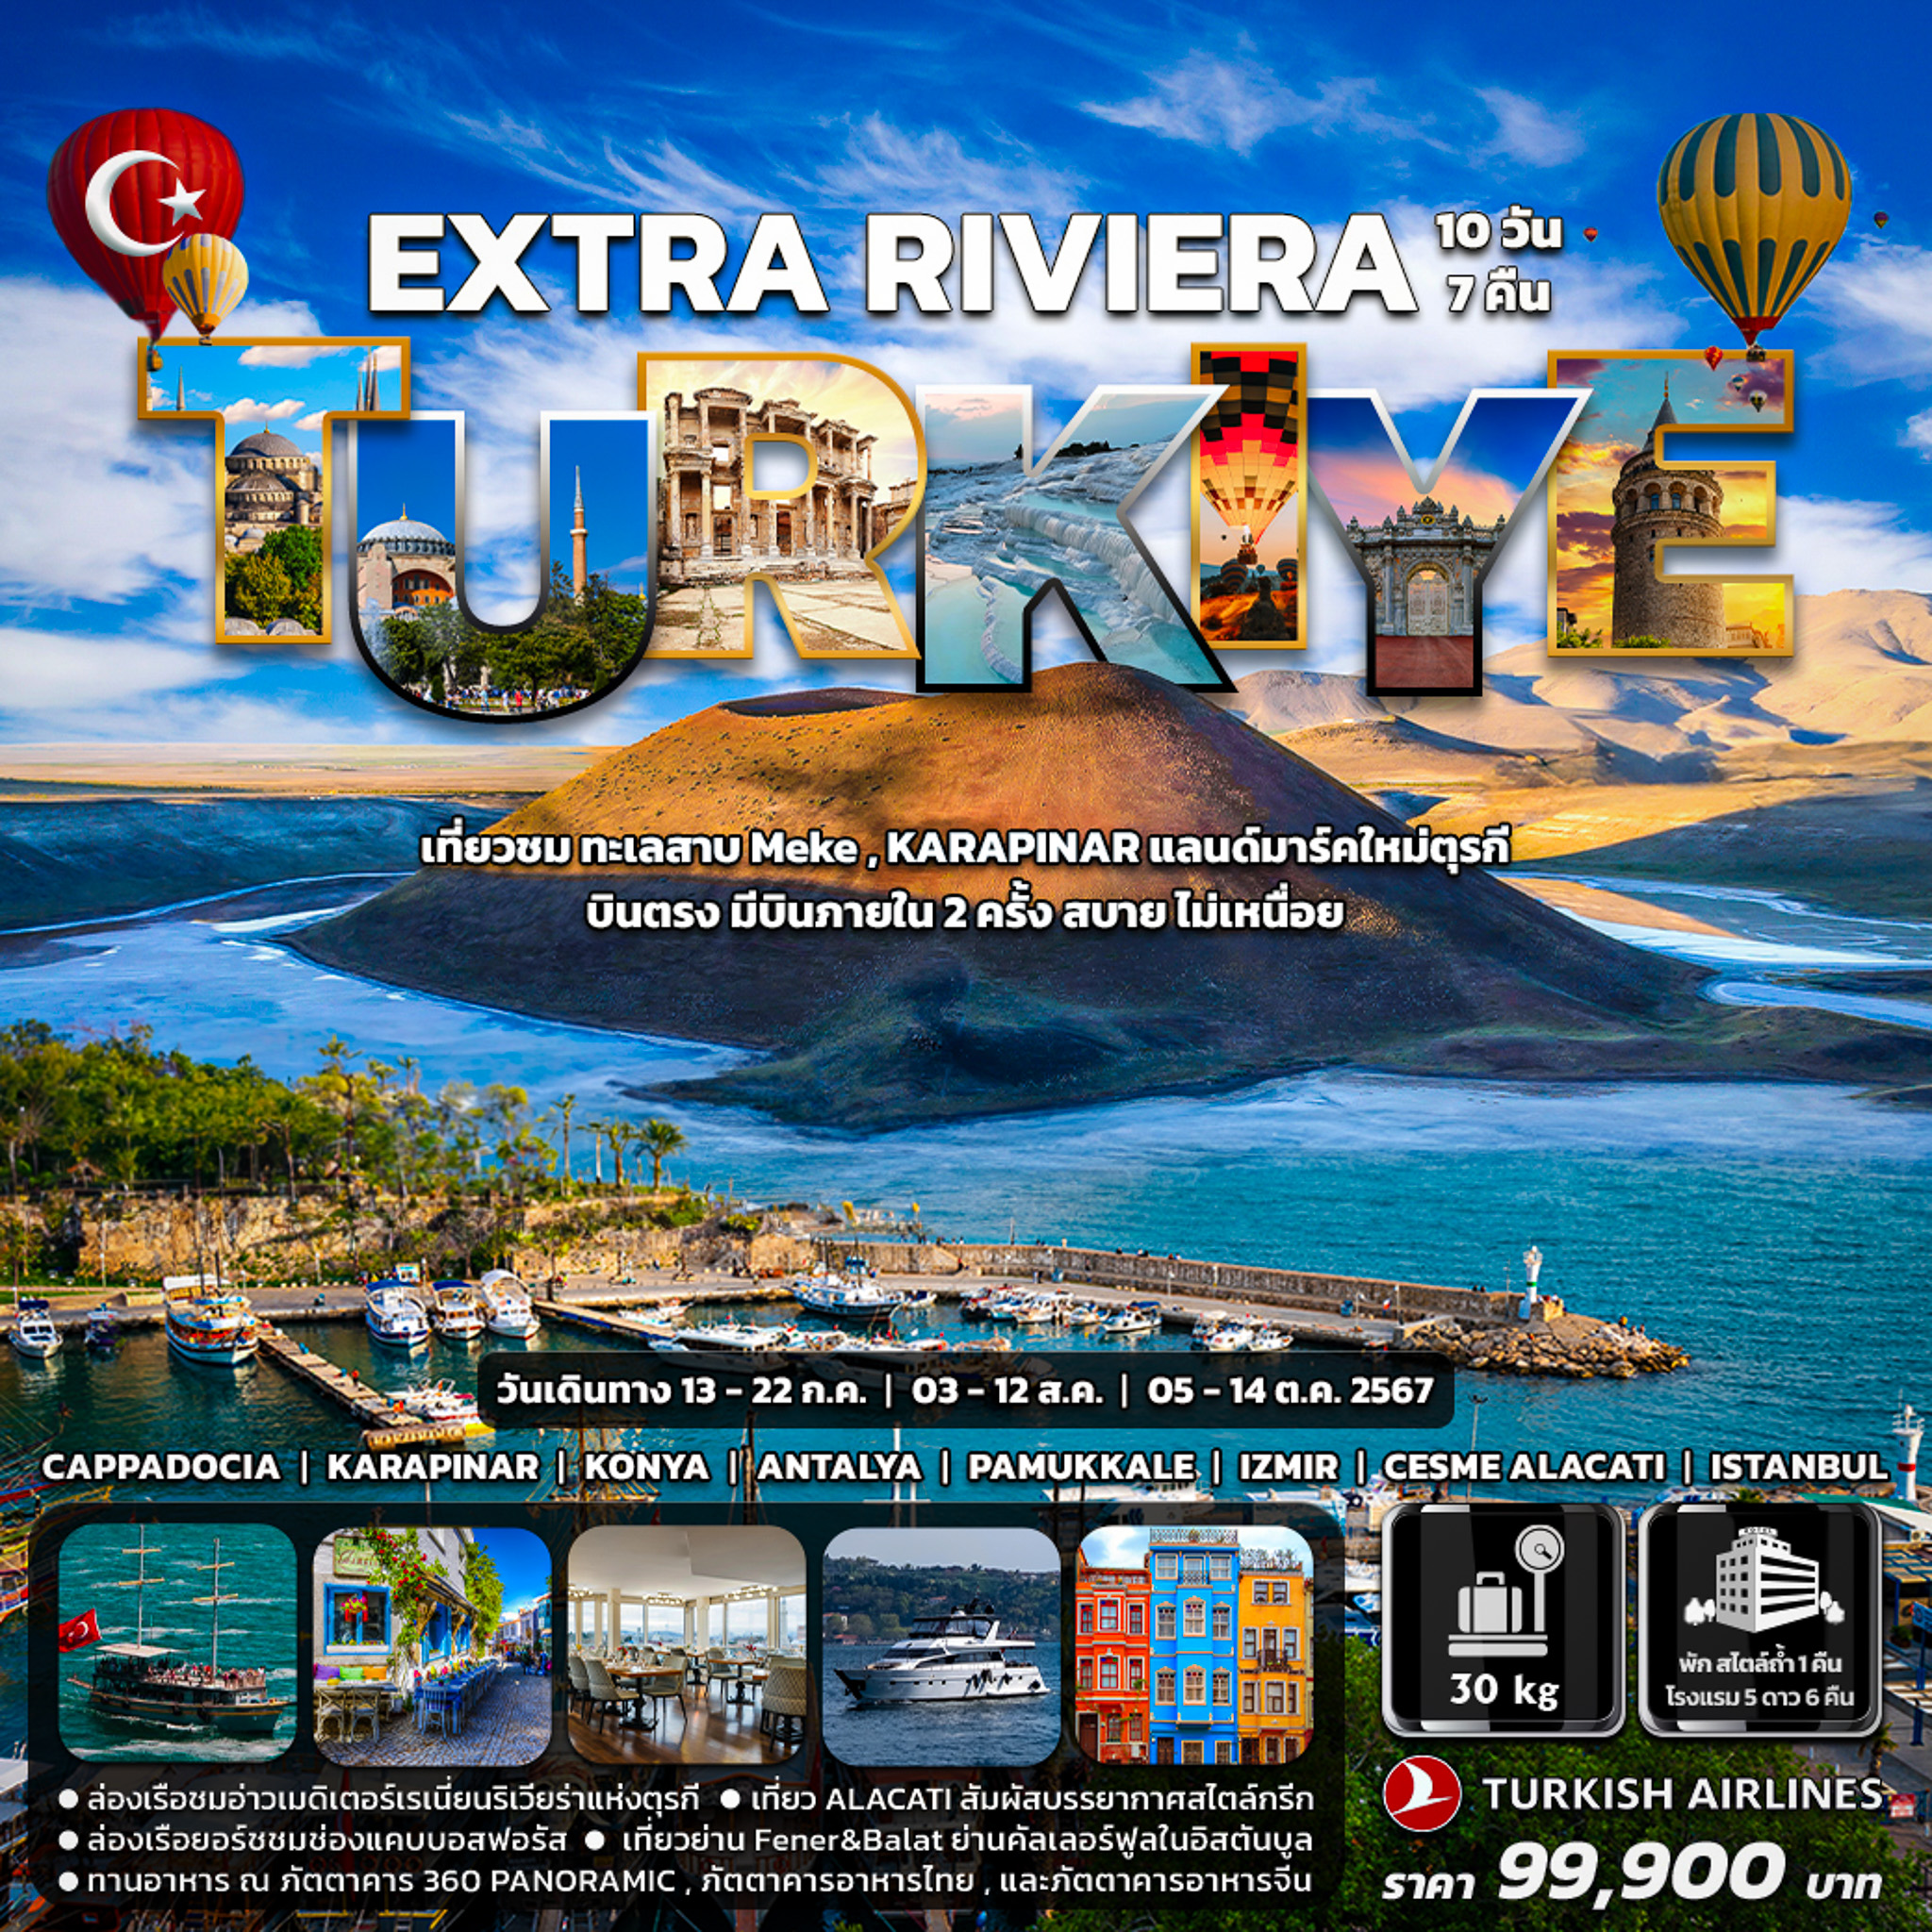 EXTRA Riviera Turkiye 10 วัน 7 คืน ก.ค. - ต.ค. 67